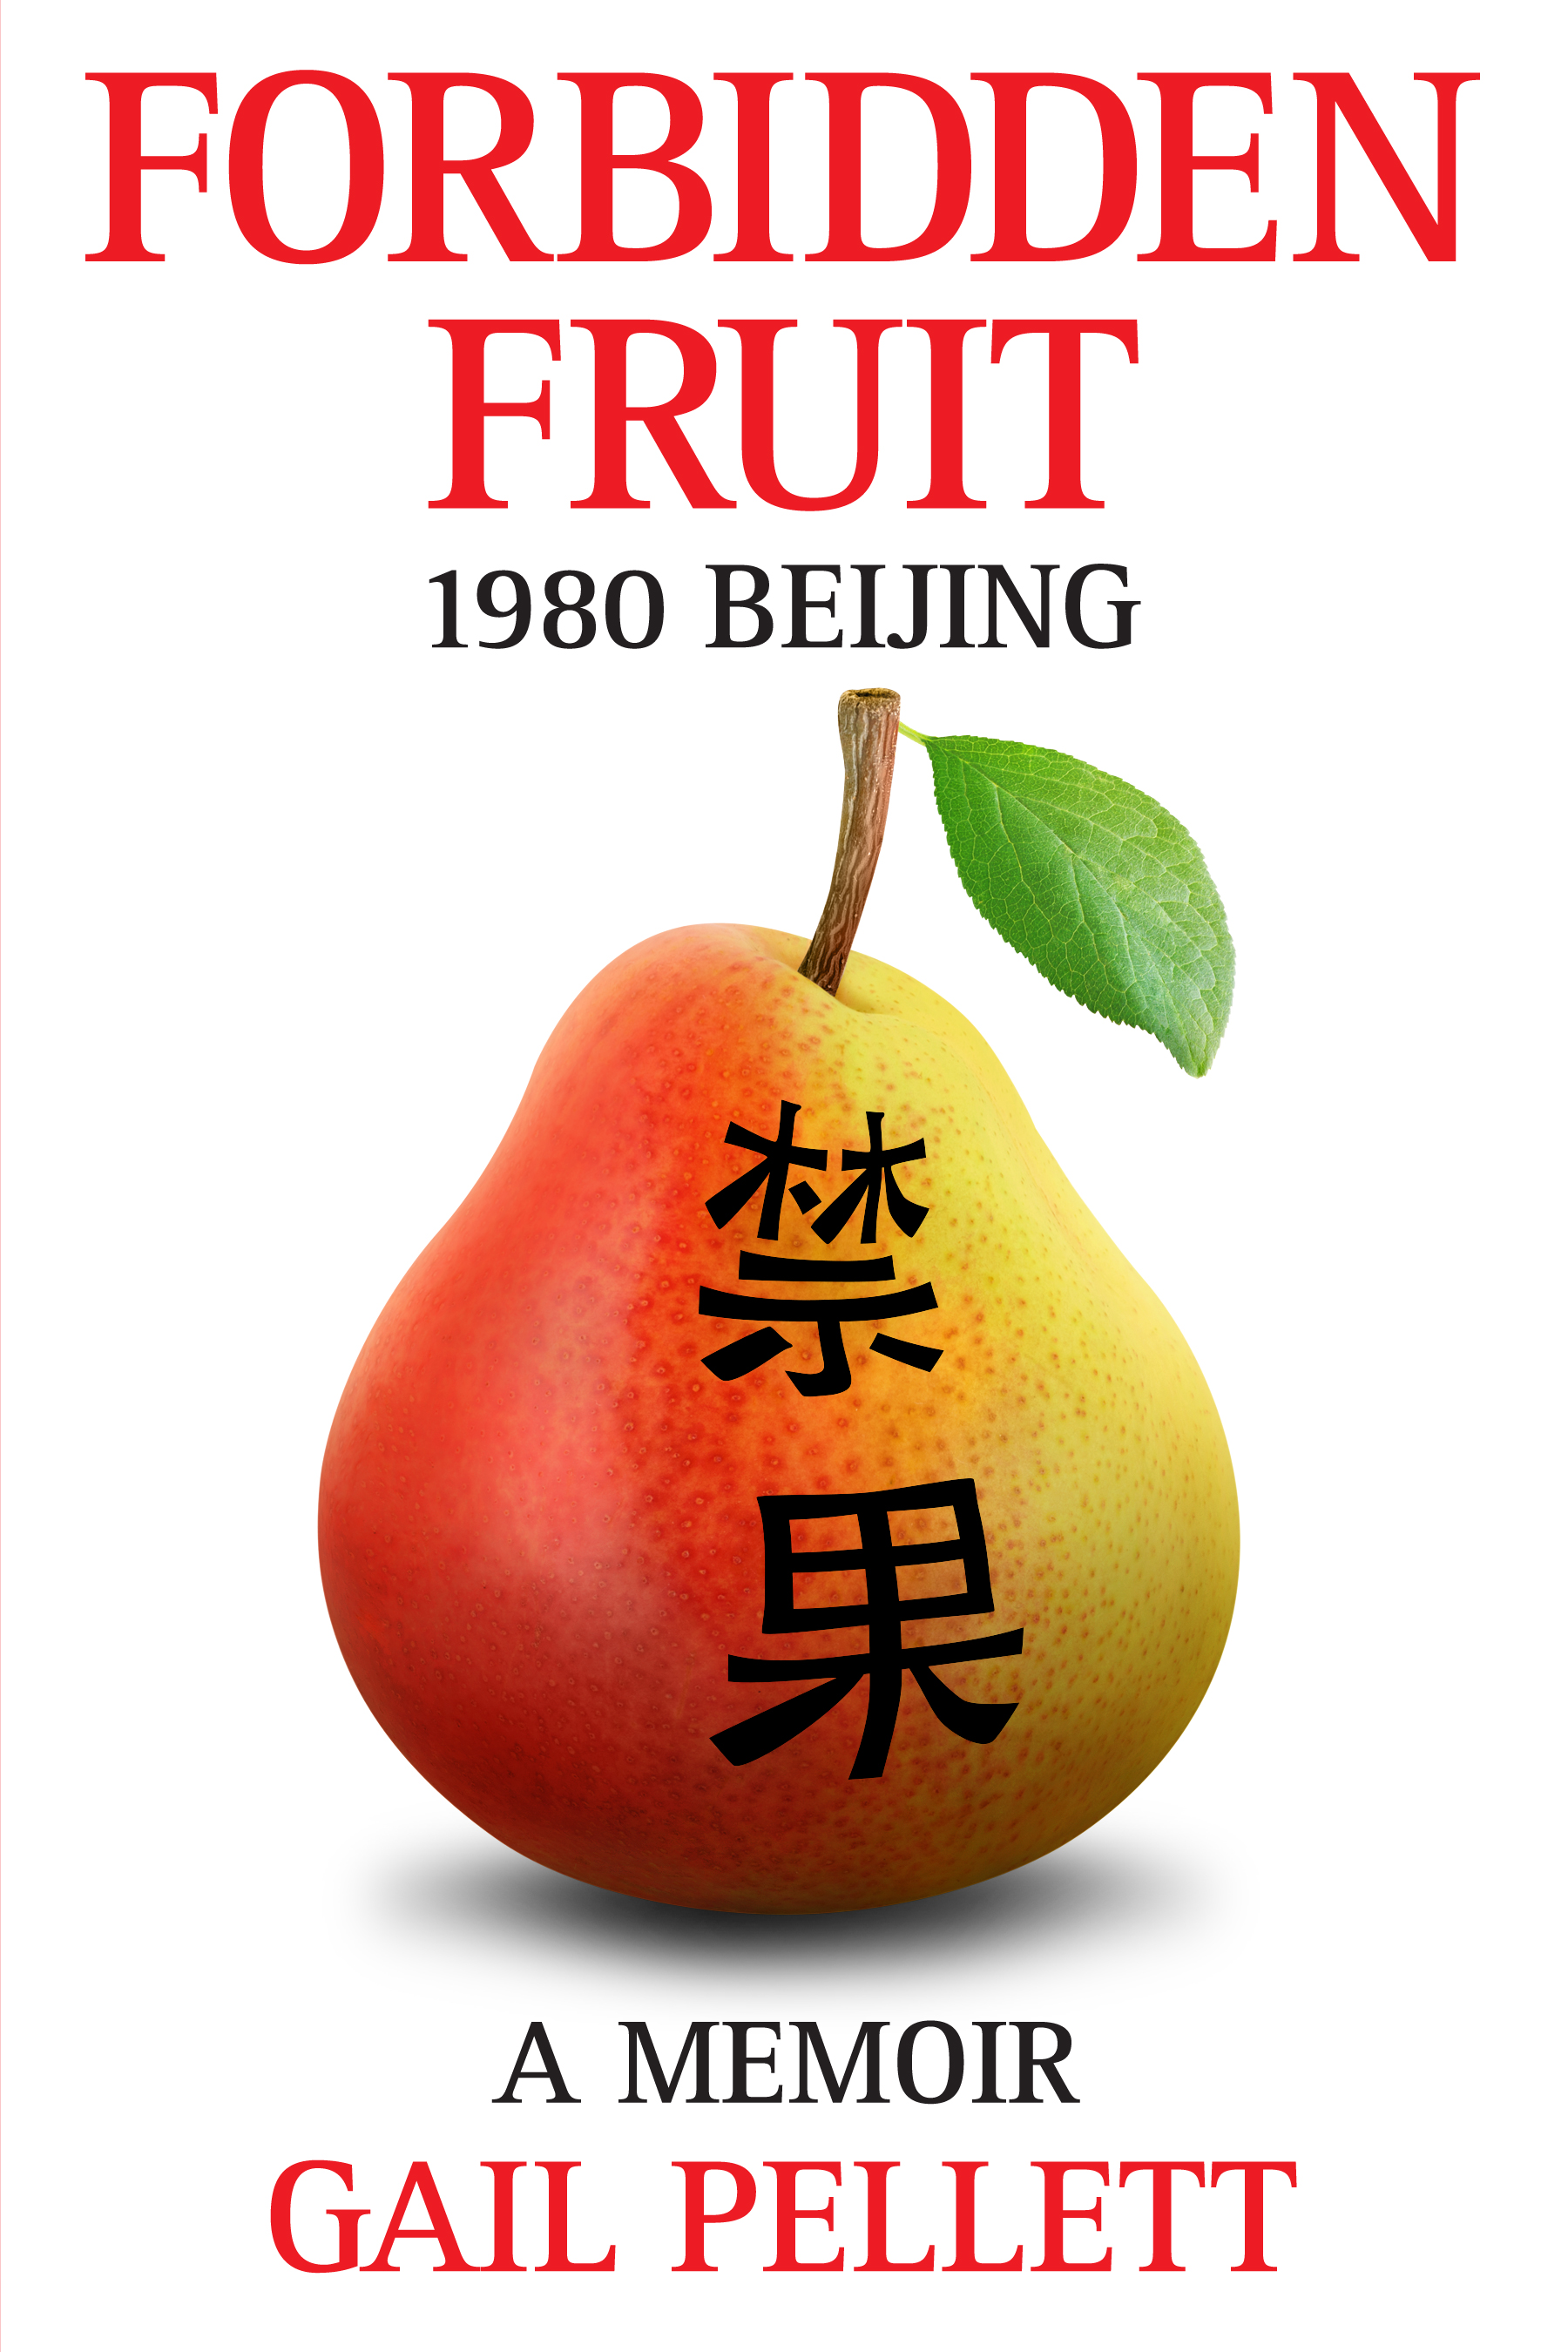 Book Launch: Forbidden Fruit 1980 Beijing by Gail Pellett